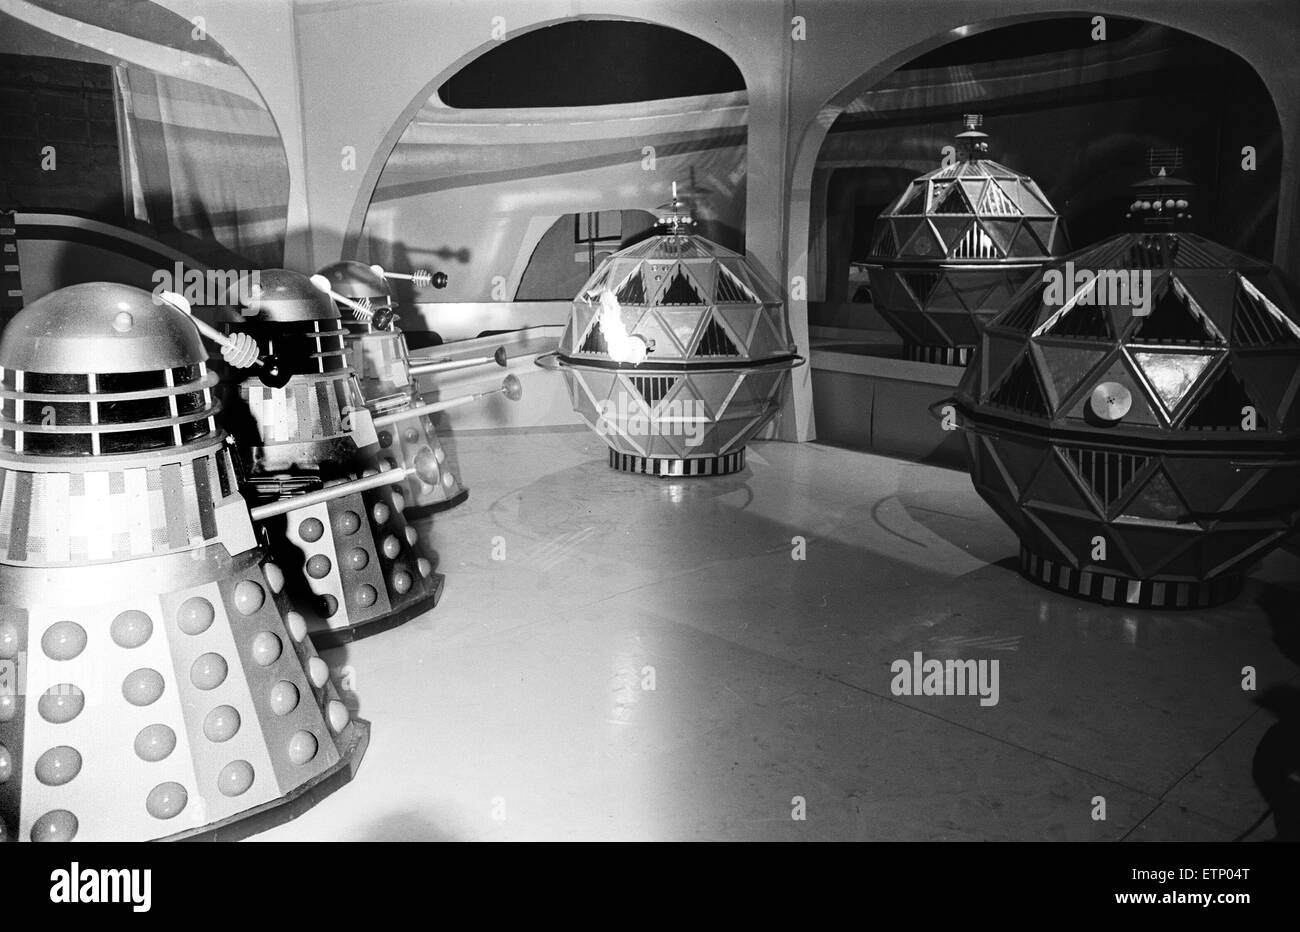 Doctor Who, série télé, scène d'histoire intitulée 'La chasse', saison 8, saison 2. Les images montrent l'affrontement entre les Mechonoids, grands robots sphériques à l'origine construit par l'homme afin d'aider à coloniser les mondes, et leurs ennemis jurés les Daleks. La confrontation a lieu sur une station spatiale. Filmé à Ealing Studios, BBC TV Vert. 14 avril 1965. Banque D'Images